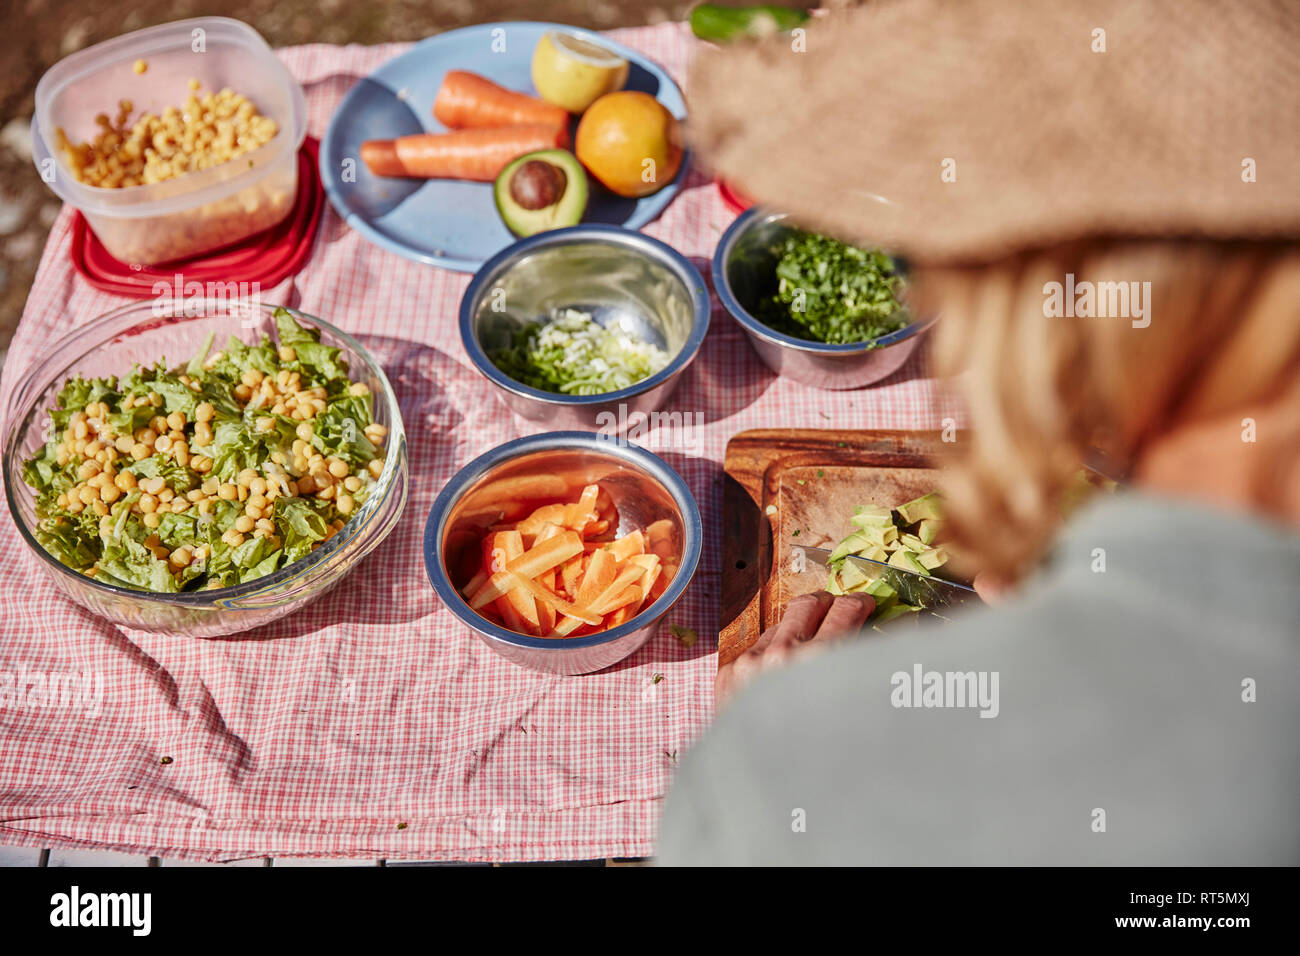 La donna la preparazione di cibo vegetariano al tavolo per esterno Foto Stock